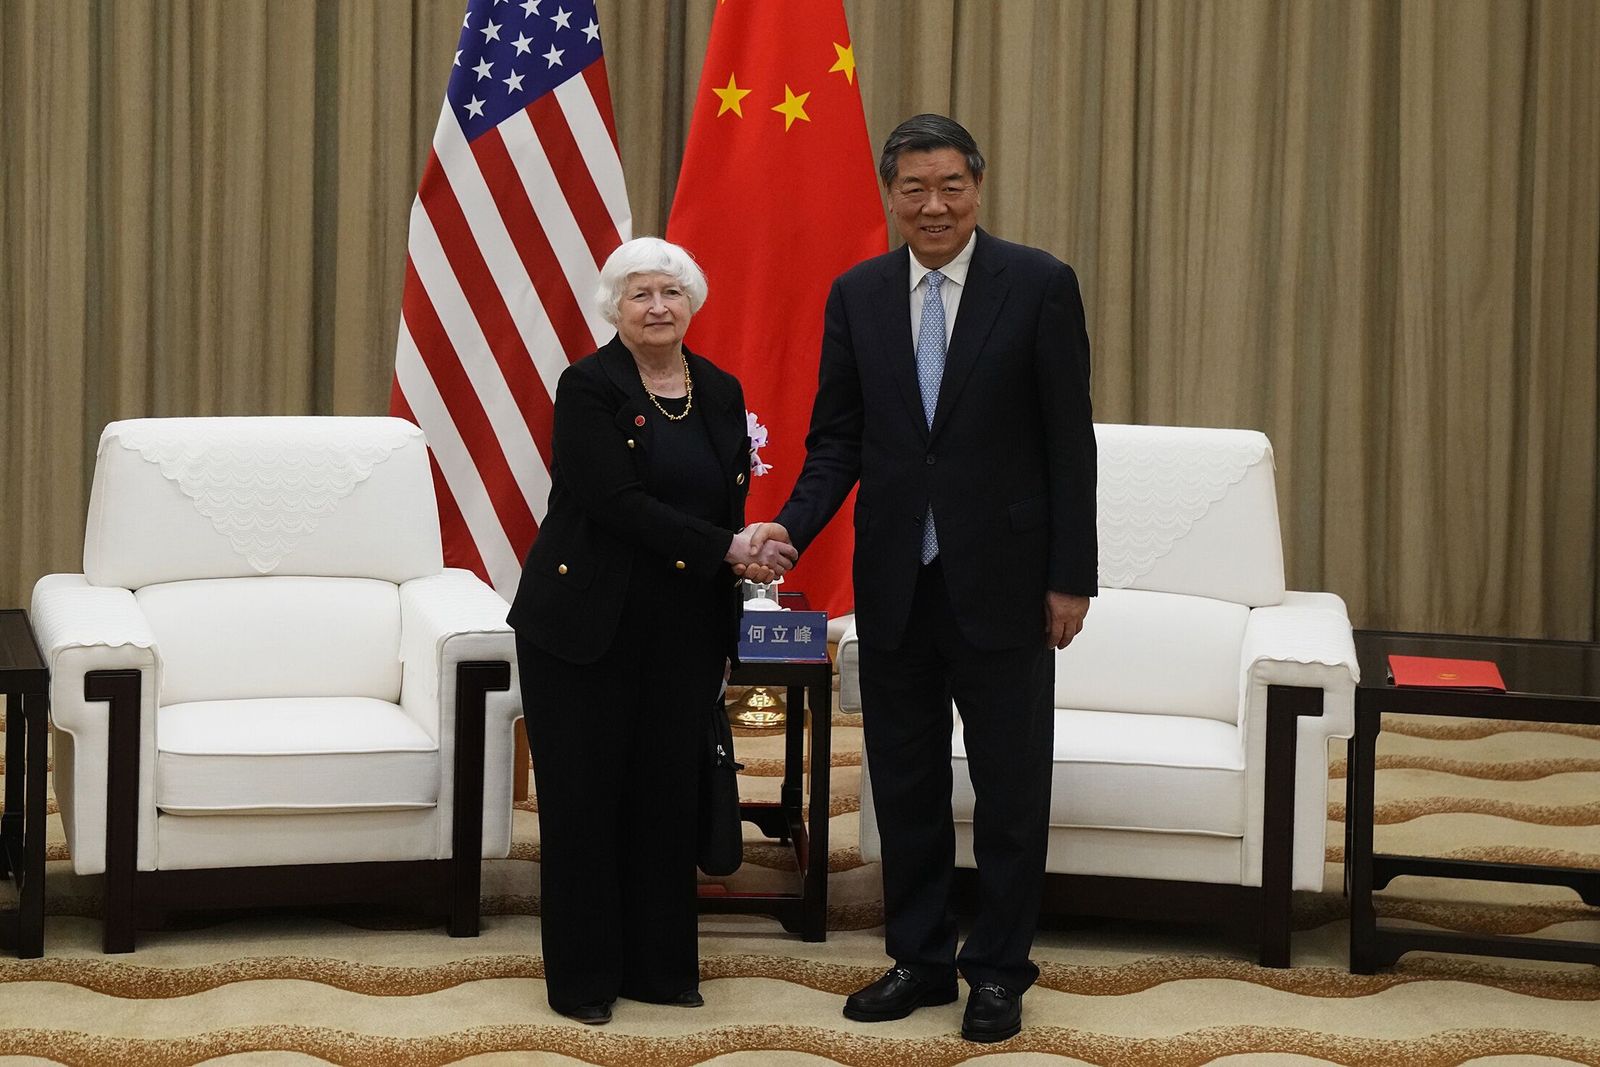 يلين: الصين والولايات المتحدة عليهما إدارة علاقتهما 